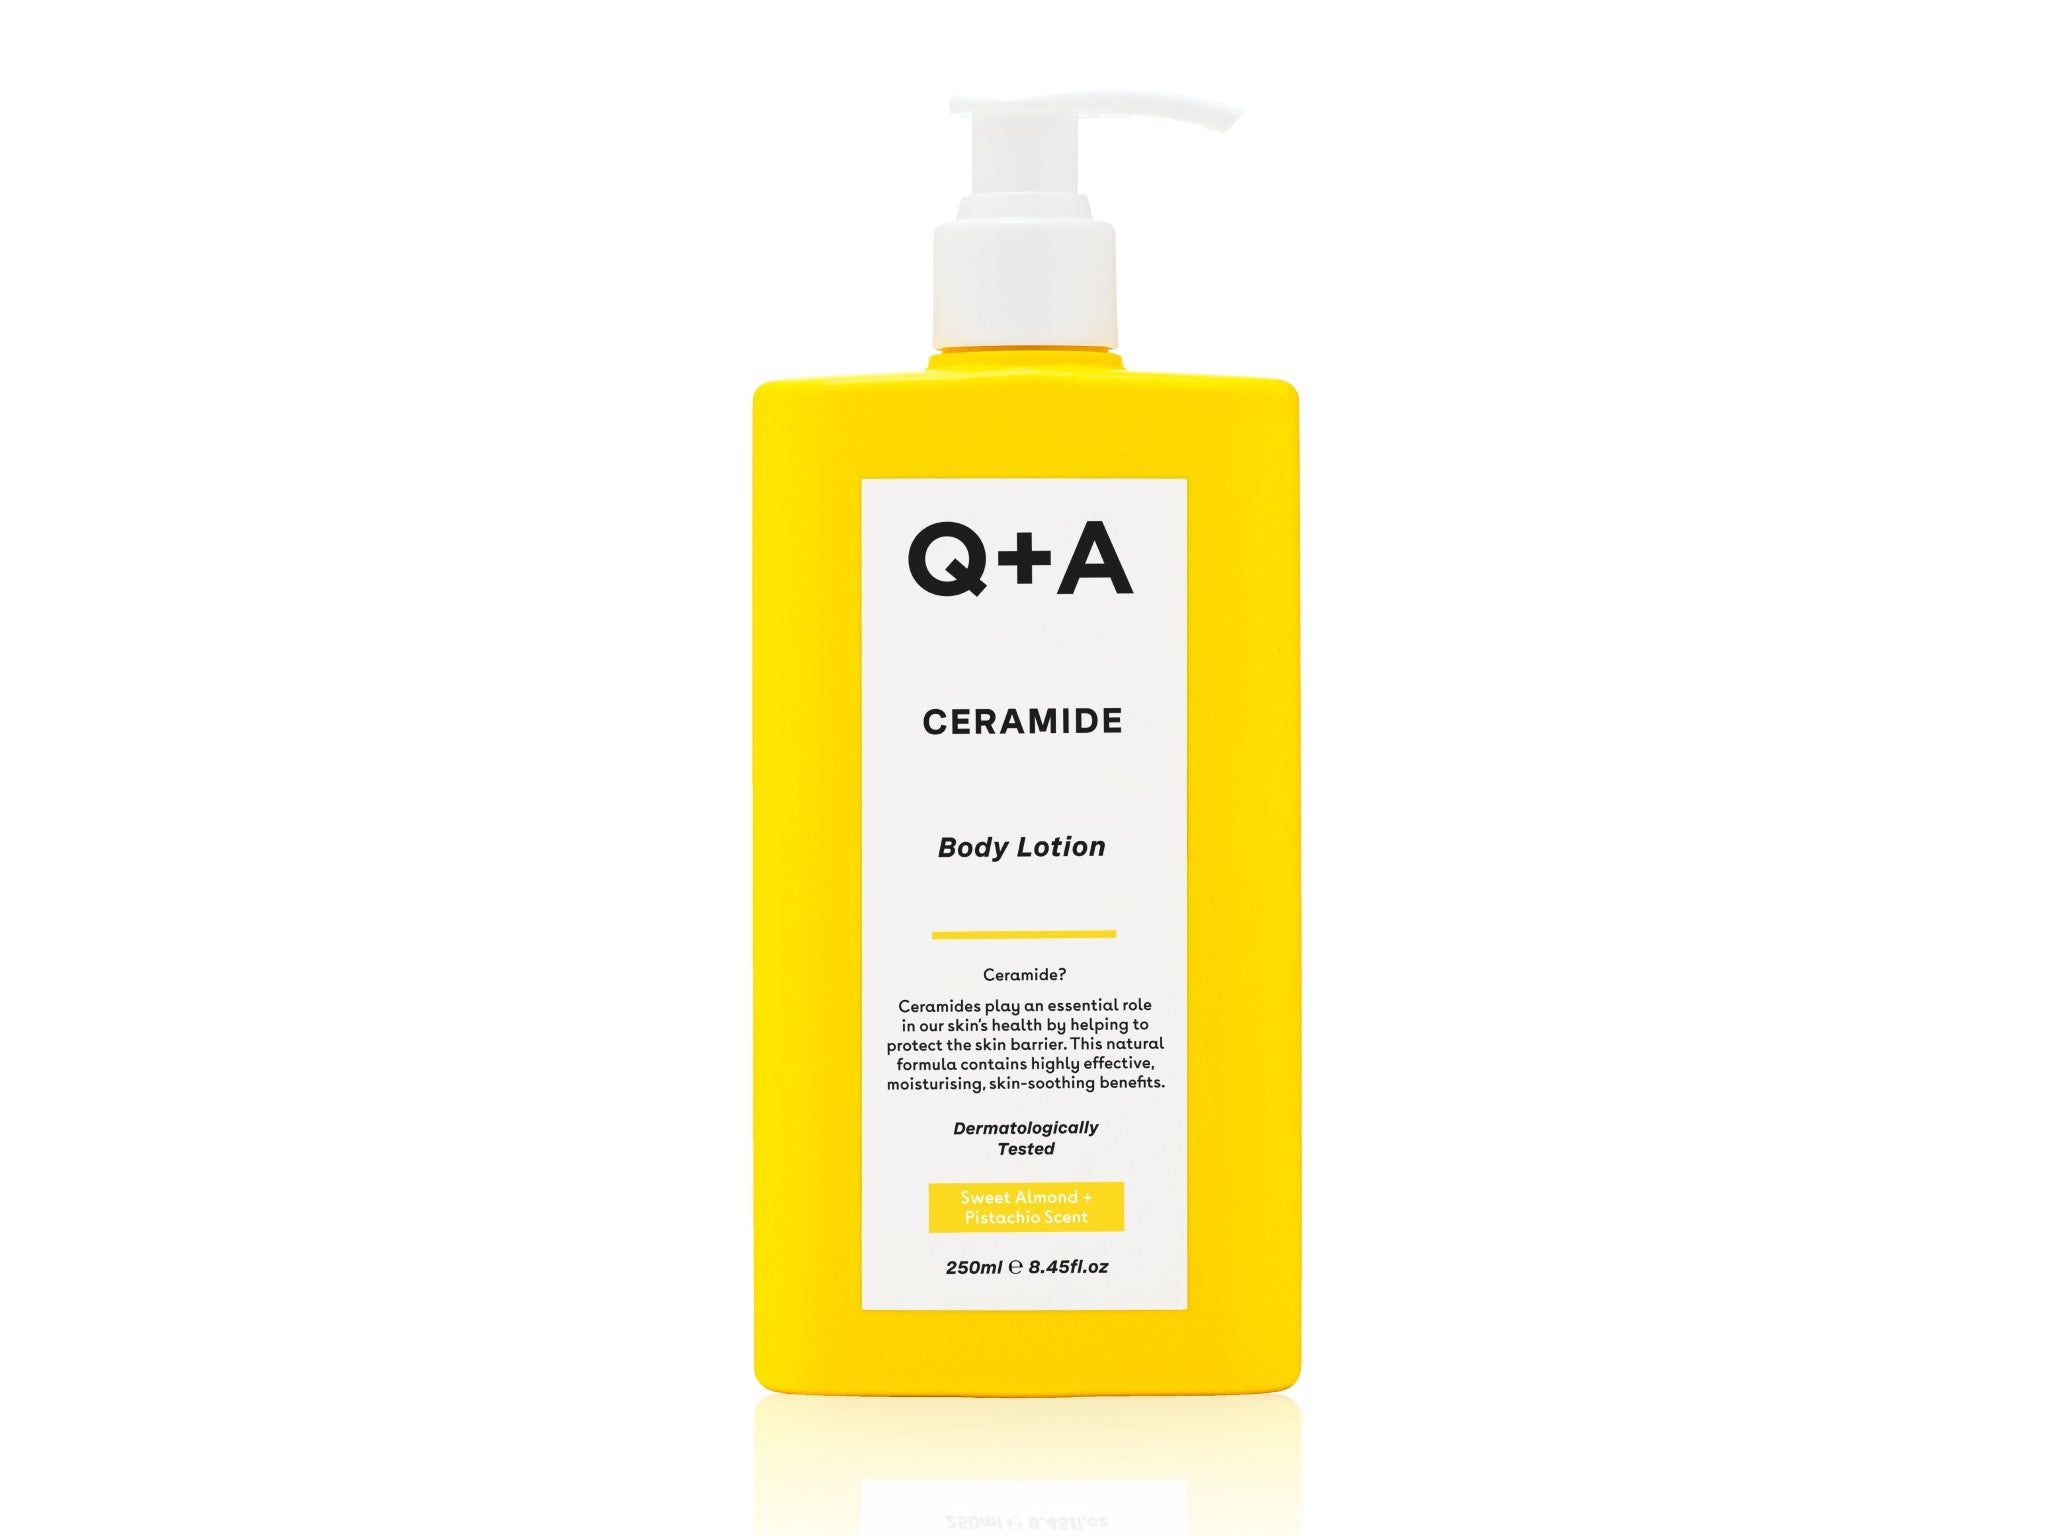 Q+A ceramide body lotion